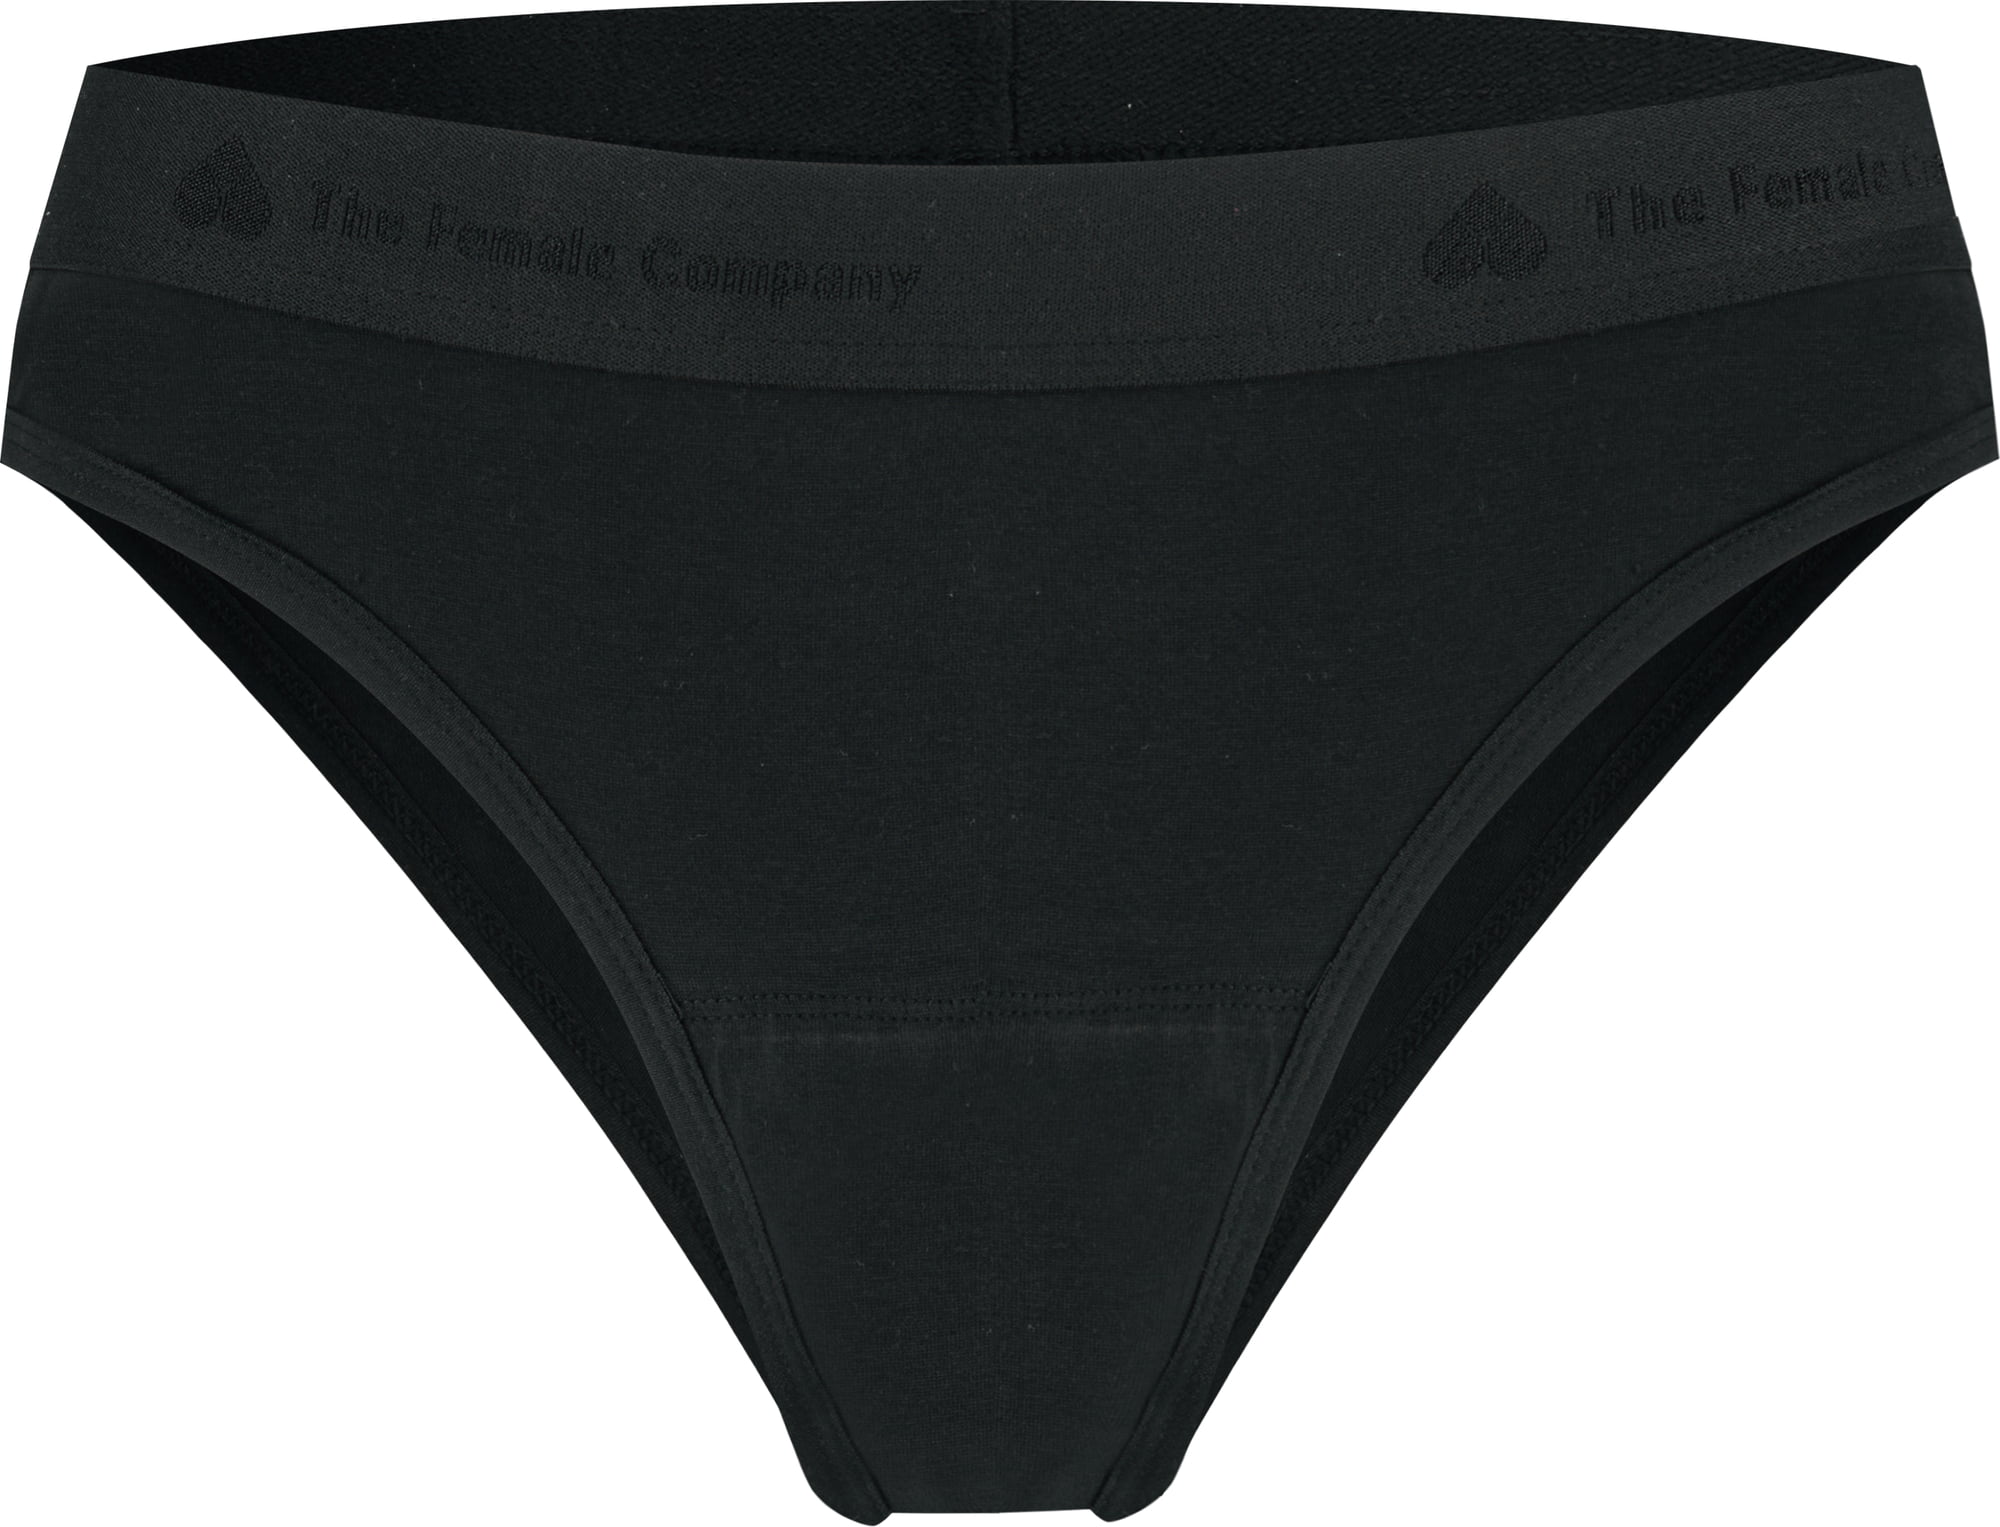 Period Underwear - Brazilian Basic Black Light Absorbancy 36